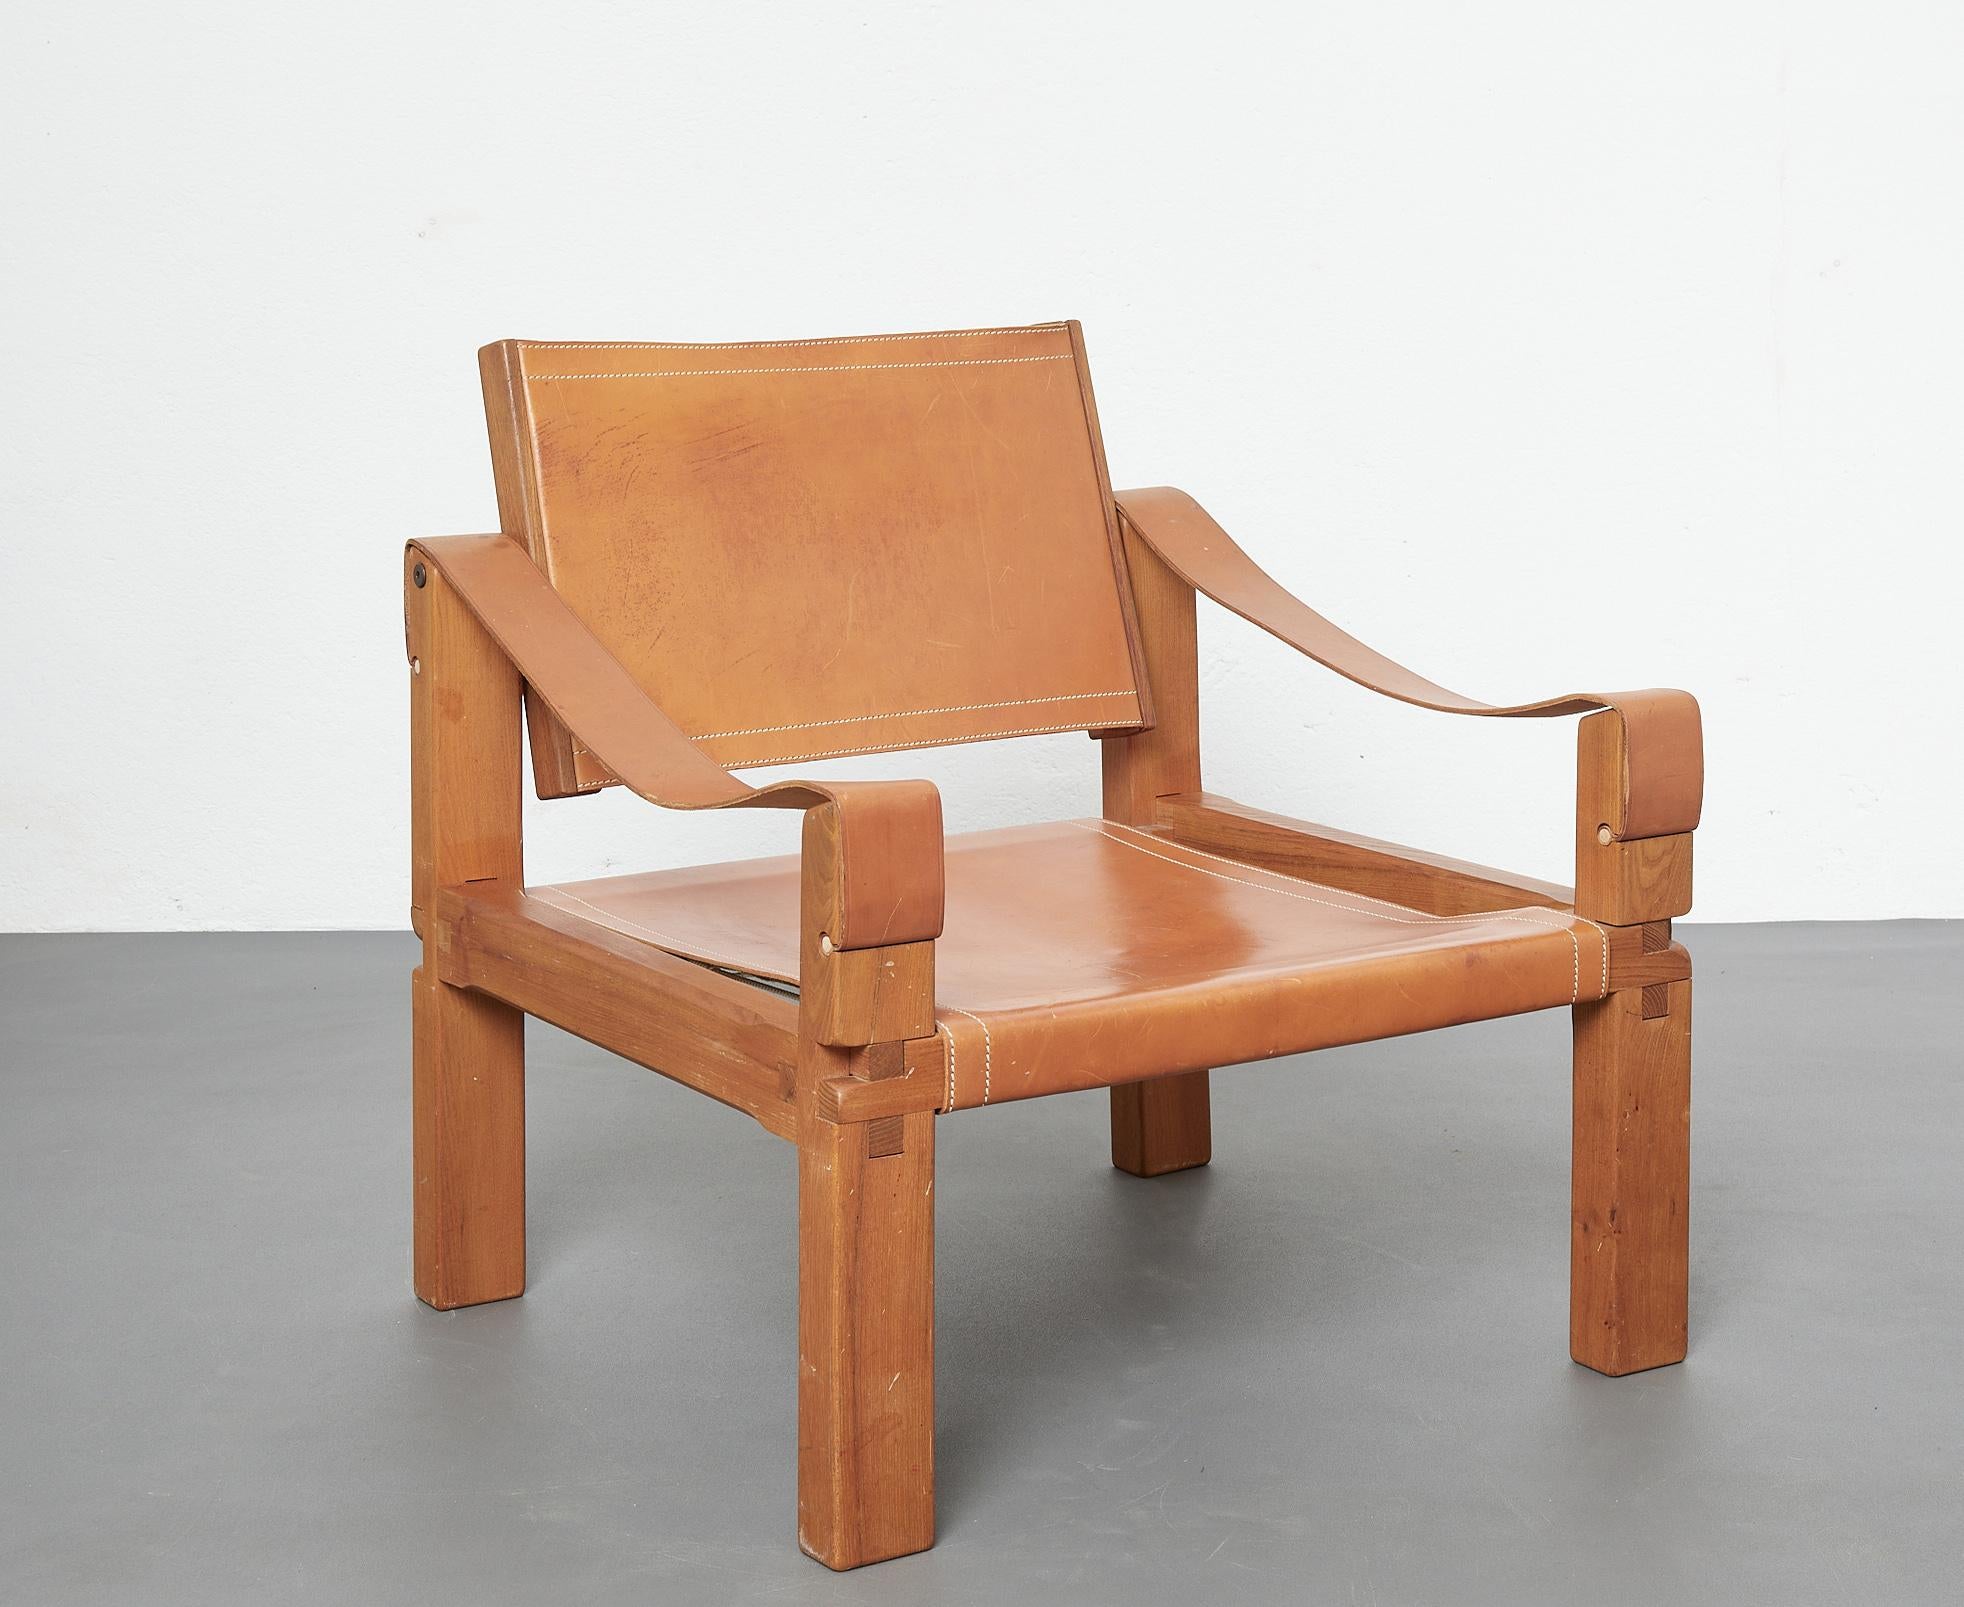 Le modèle S10 également appelé Sahara a été conçu par le célèbre designer français Pierre Chapo.

Les fauteuils sont fabriqués à partir d'une structure en bois d'orme massif. L'assise et le dossier, ainsi que les accoudoirs, sont en cuir brun